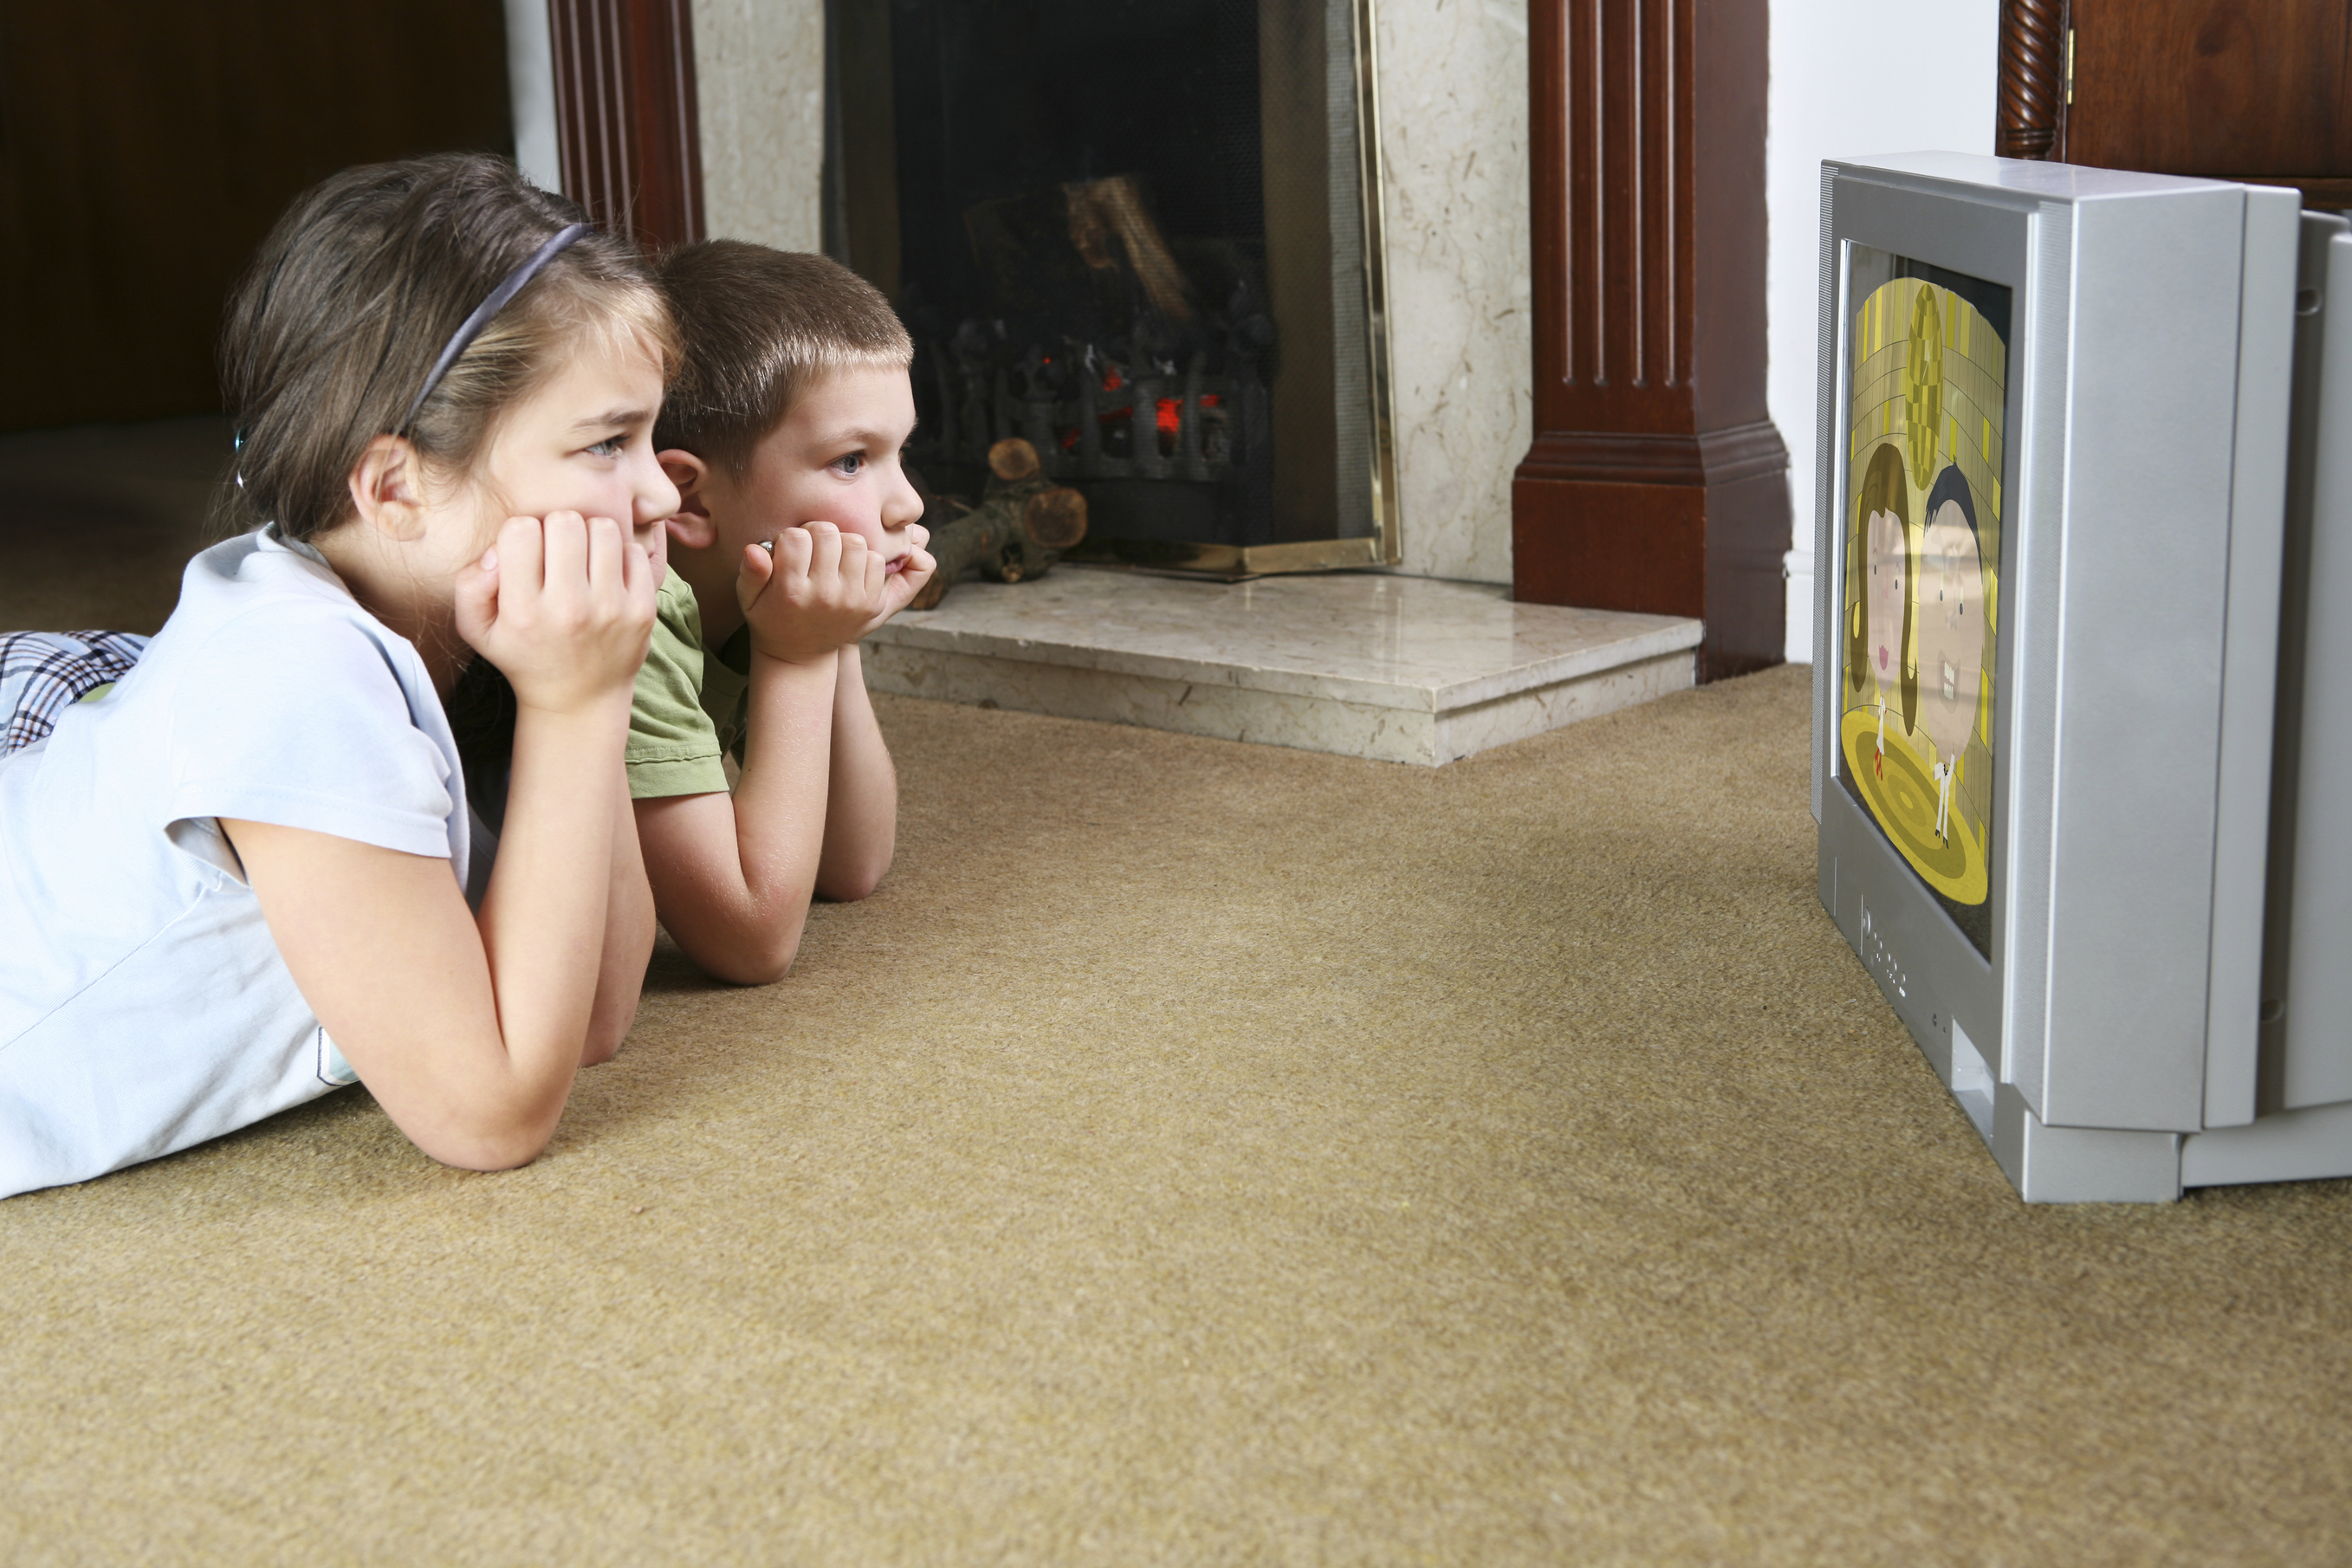 How to Get Your Indoor Kid More Active